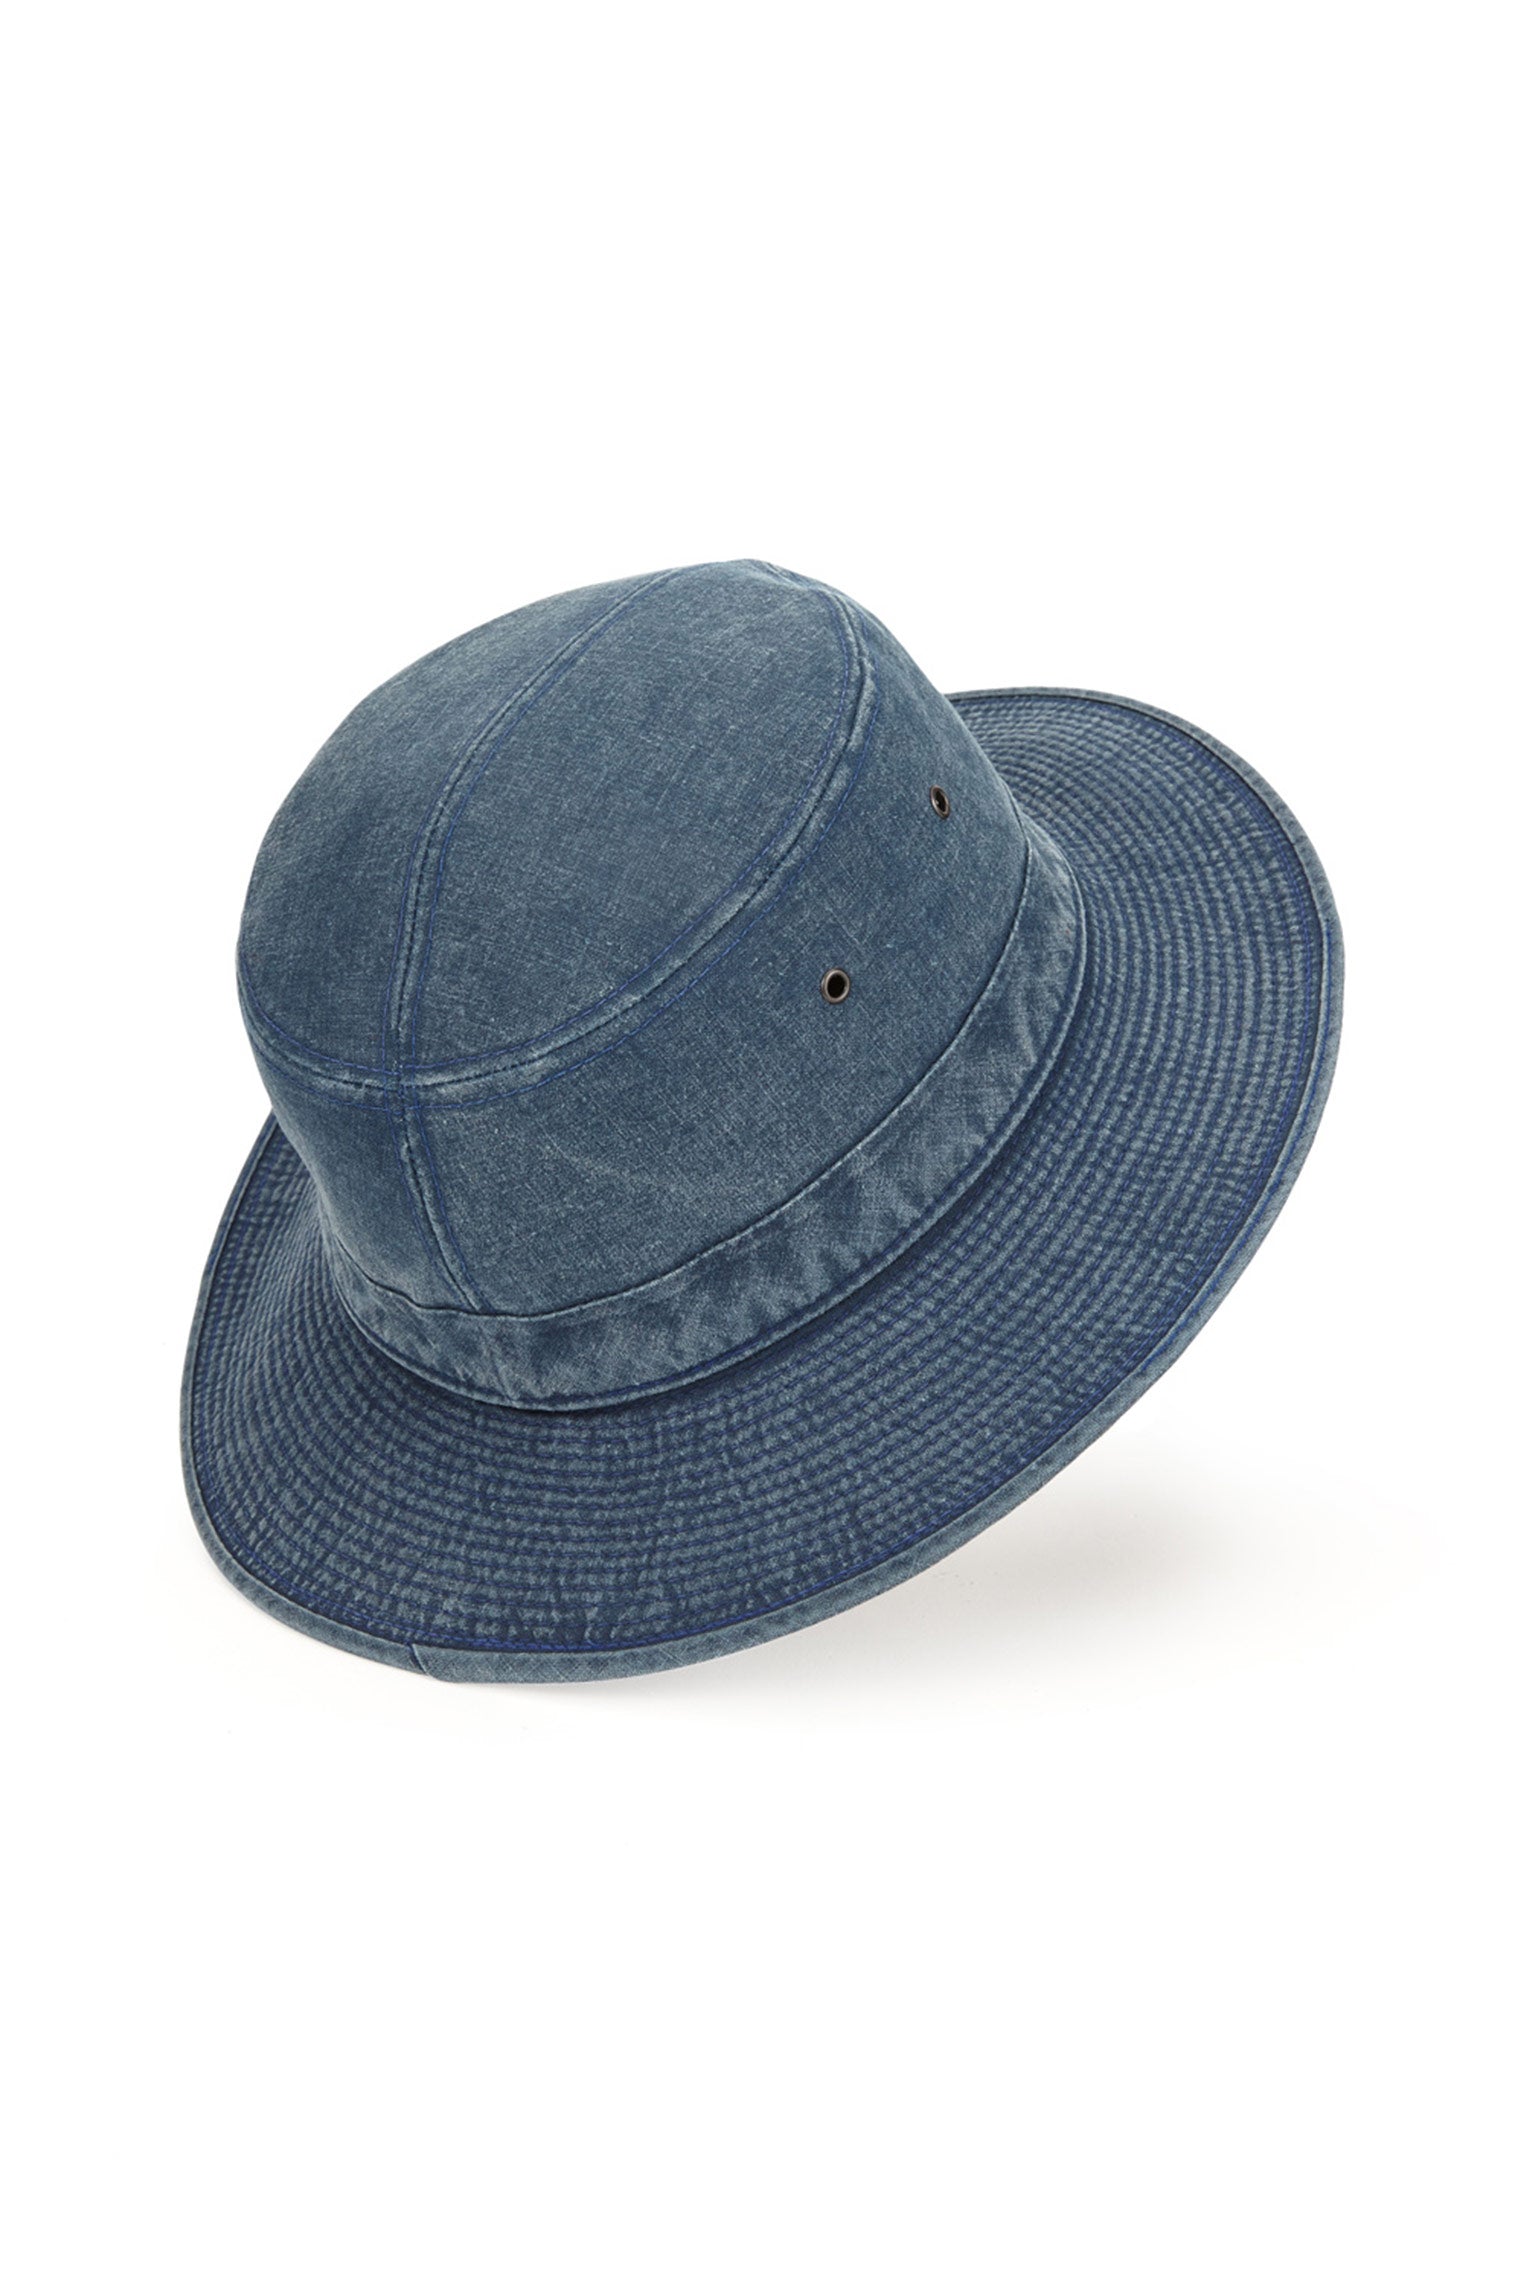 Capri Rollable Hat - Men’s Bucket Hats - Lock & Co. Hatters London UK